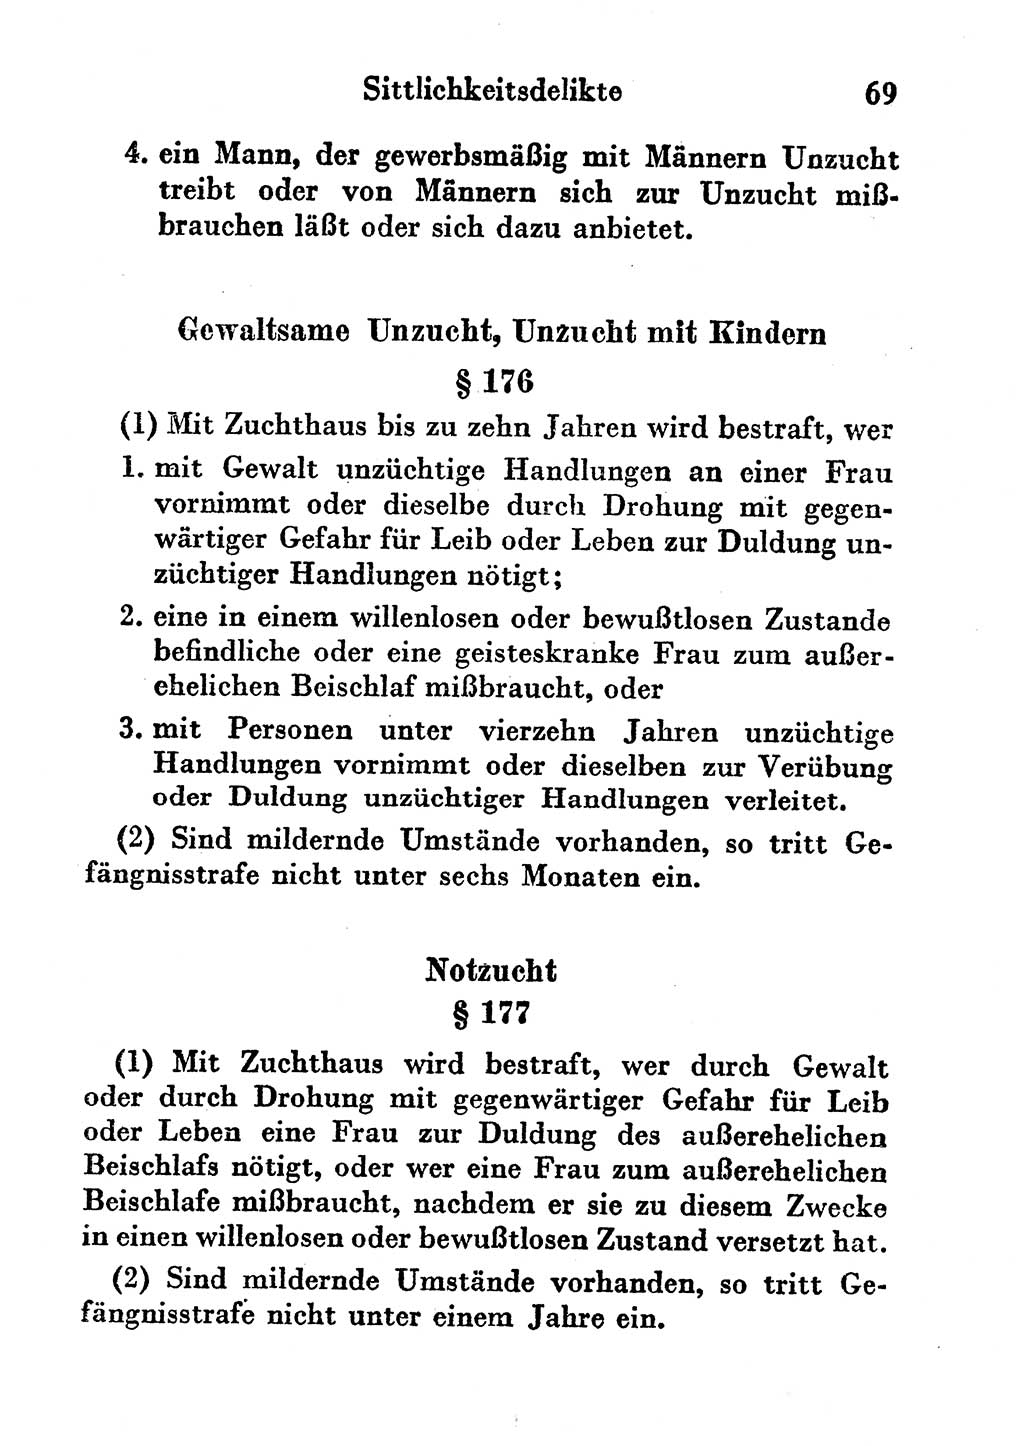 Strafgesetzbuch (StGB) und andere Strafgesetze [Deutsche Demokratische Republik (DDR)] 1956, Seite 69 (StGB Strafges. DDR 1956, S. 69)